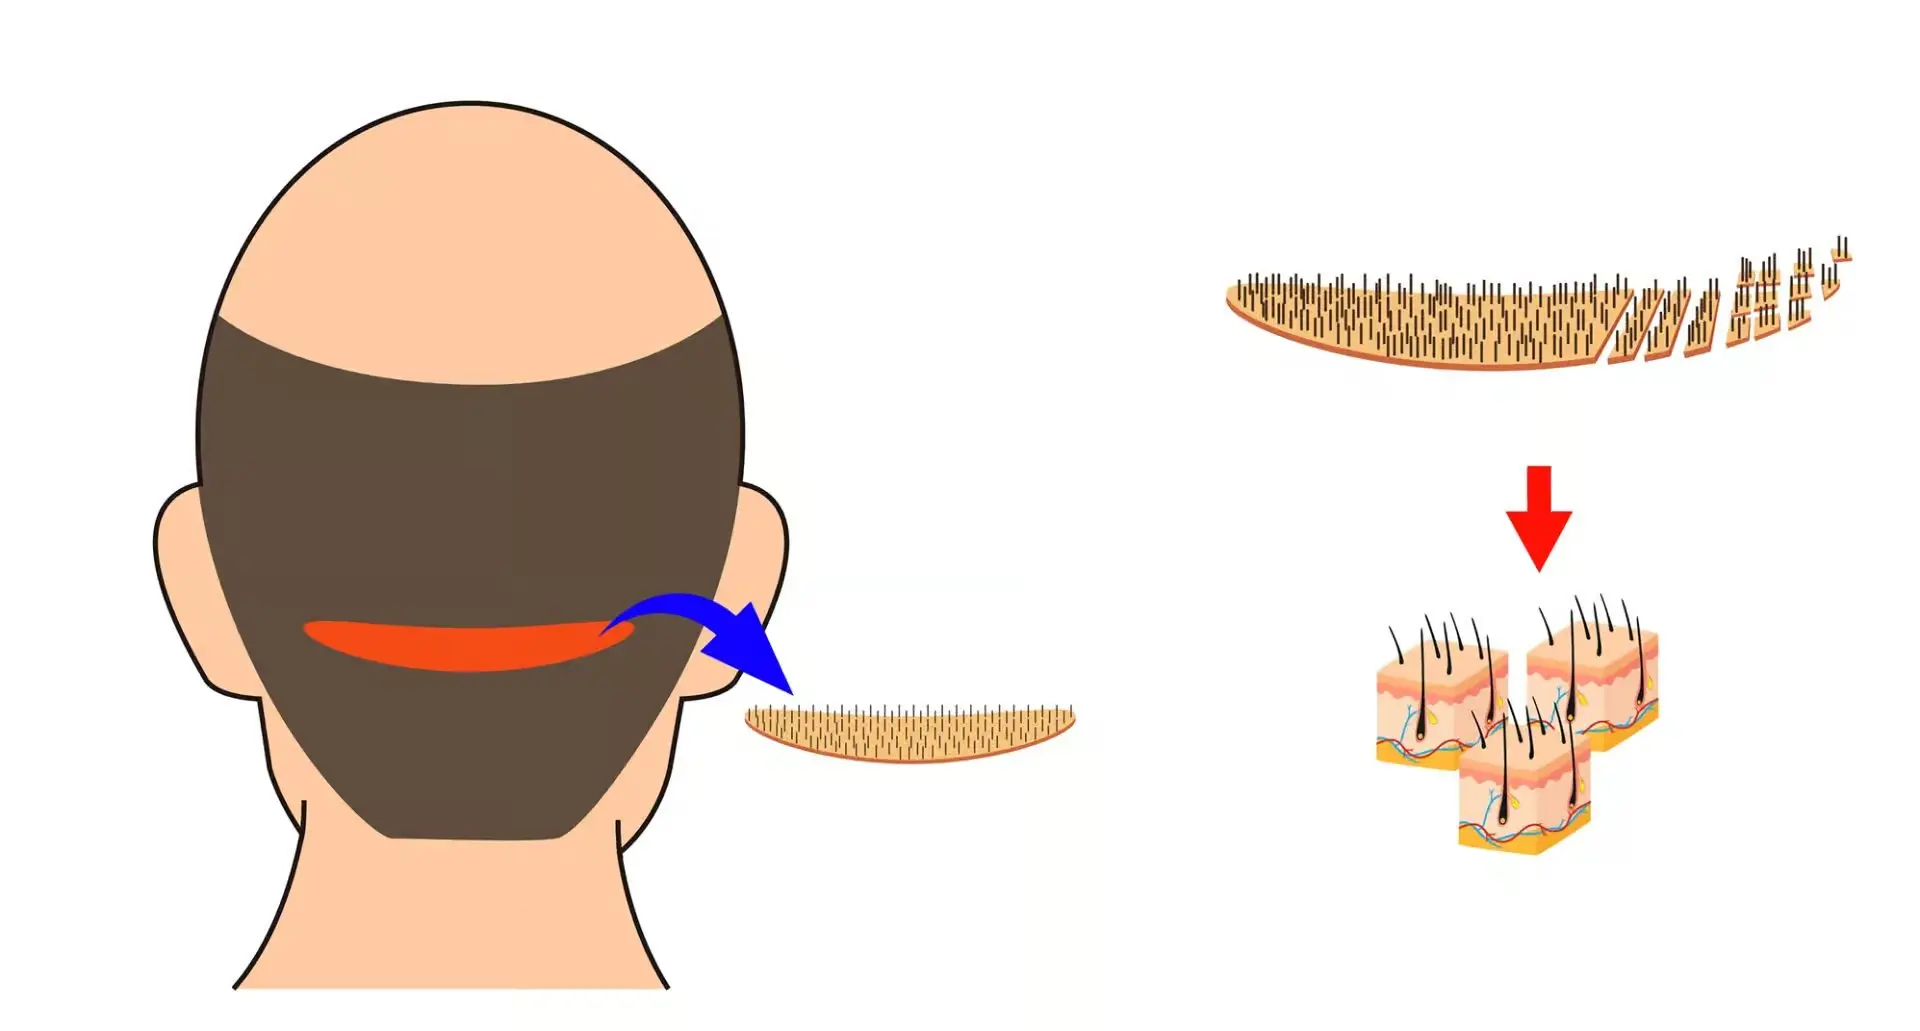 Grafare păr pe piele - Clinica Doctor MiT - Biotehnologie aplicată